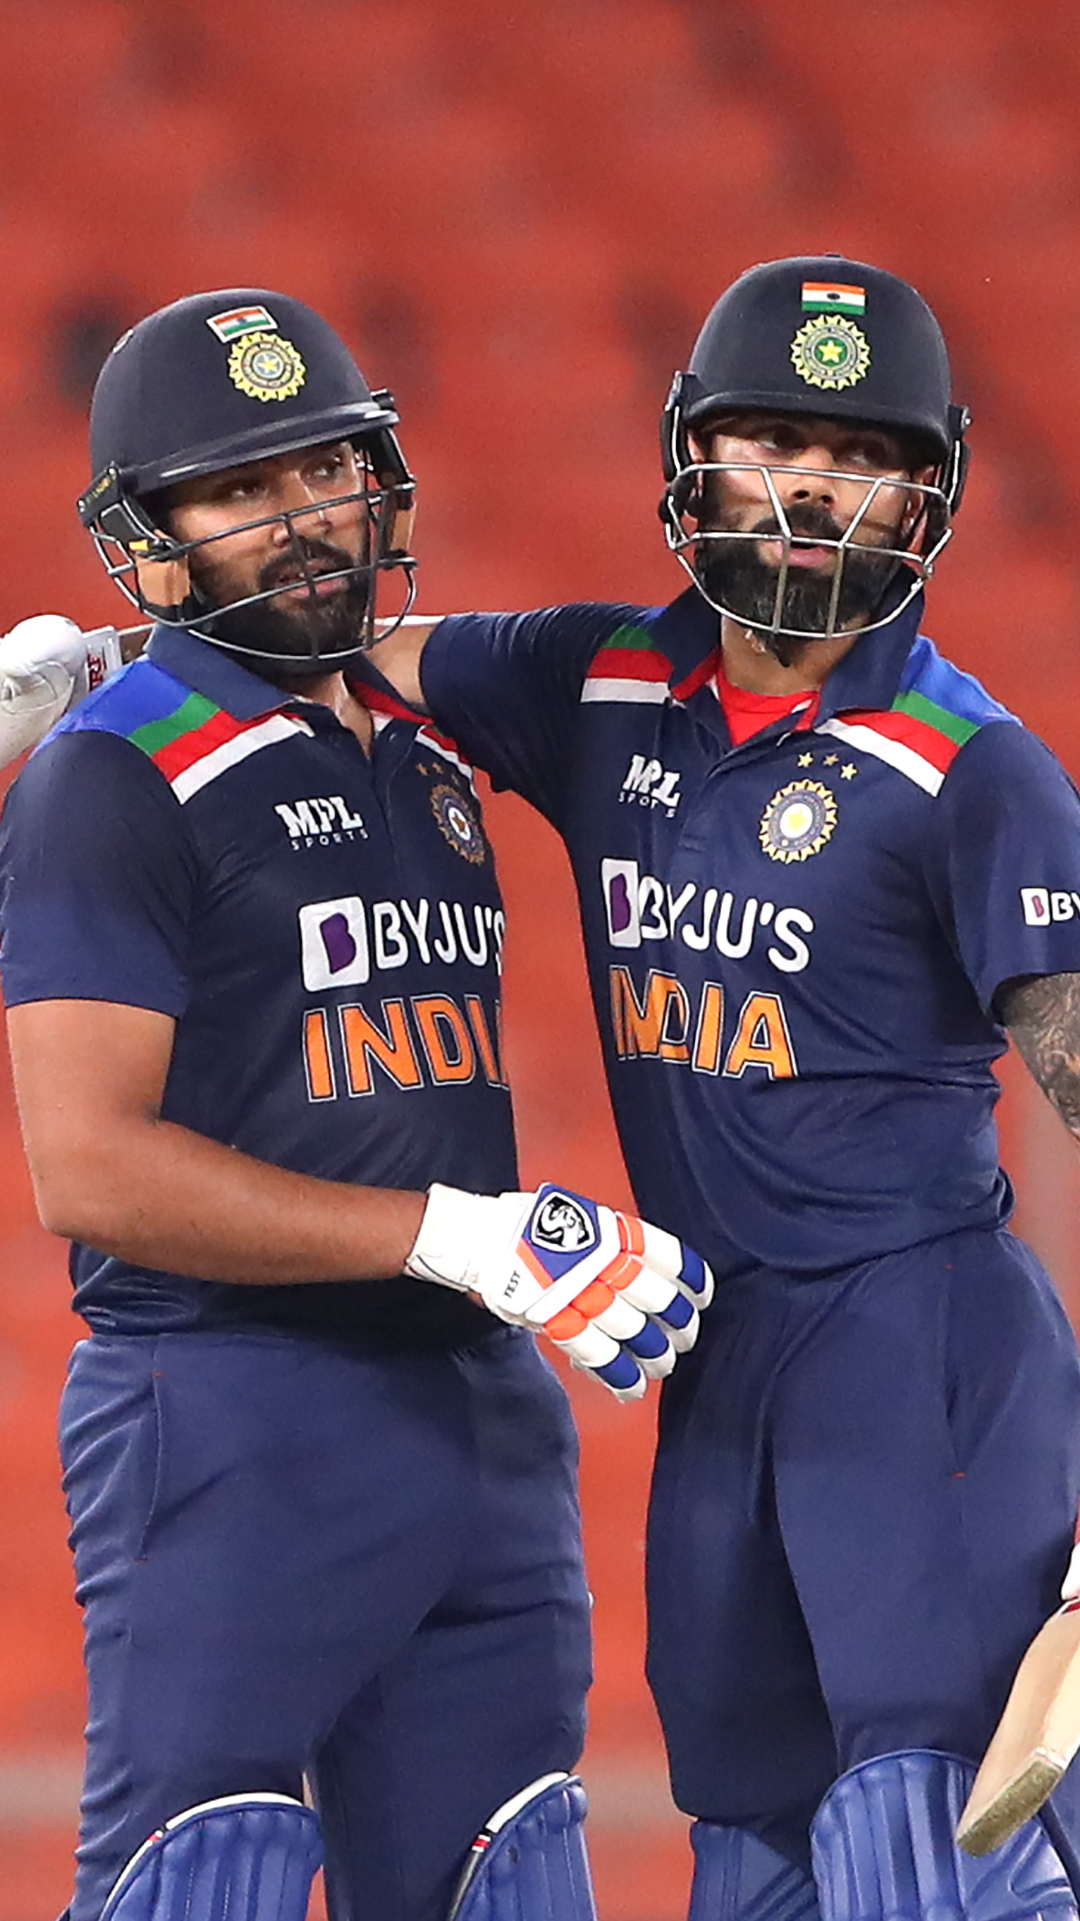 एक द्विपक्षीय वनडे सीरीज में सबसे ज्यादा रन बनाने वाले टॉप पांच बल्लेबाज, लिस्ट में शामिल दो भारतीय